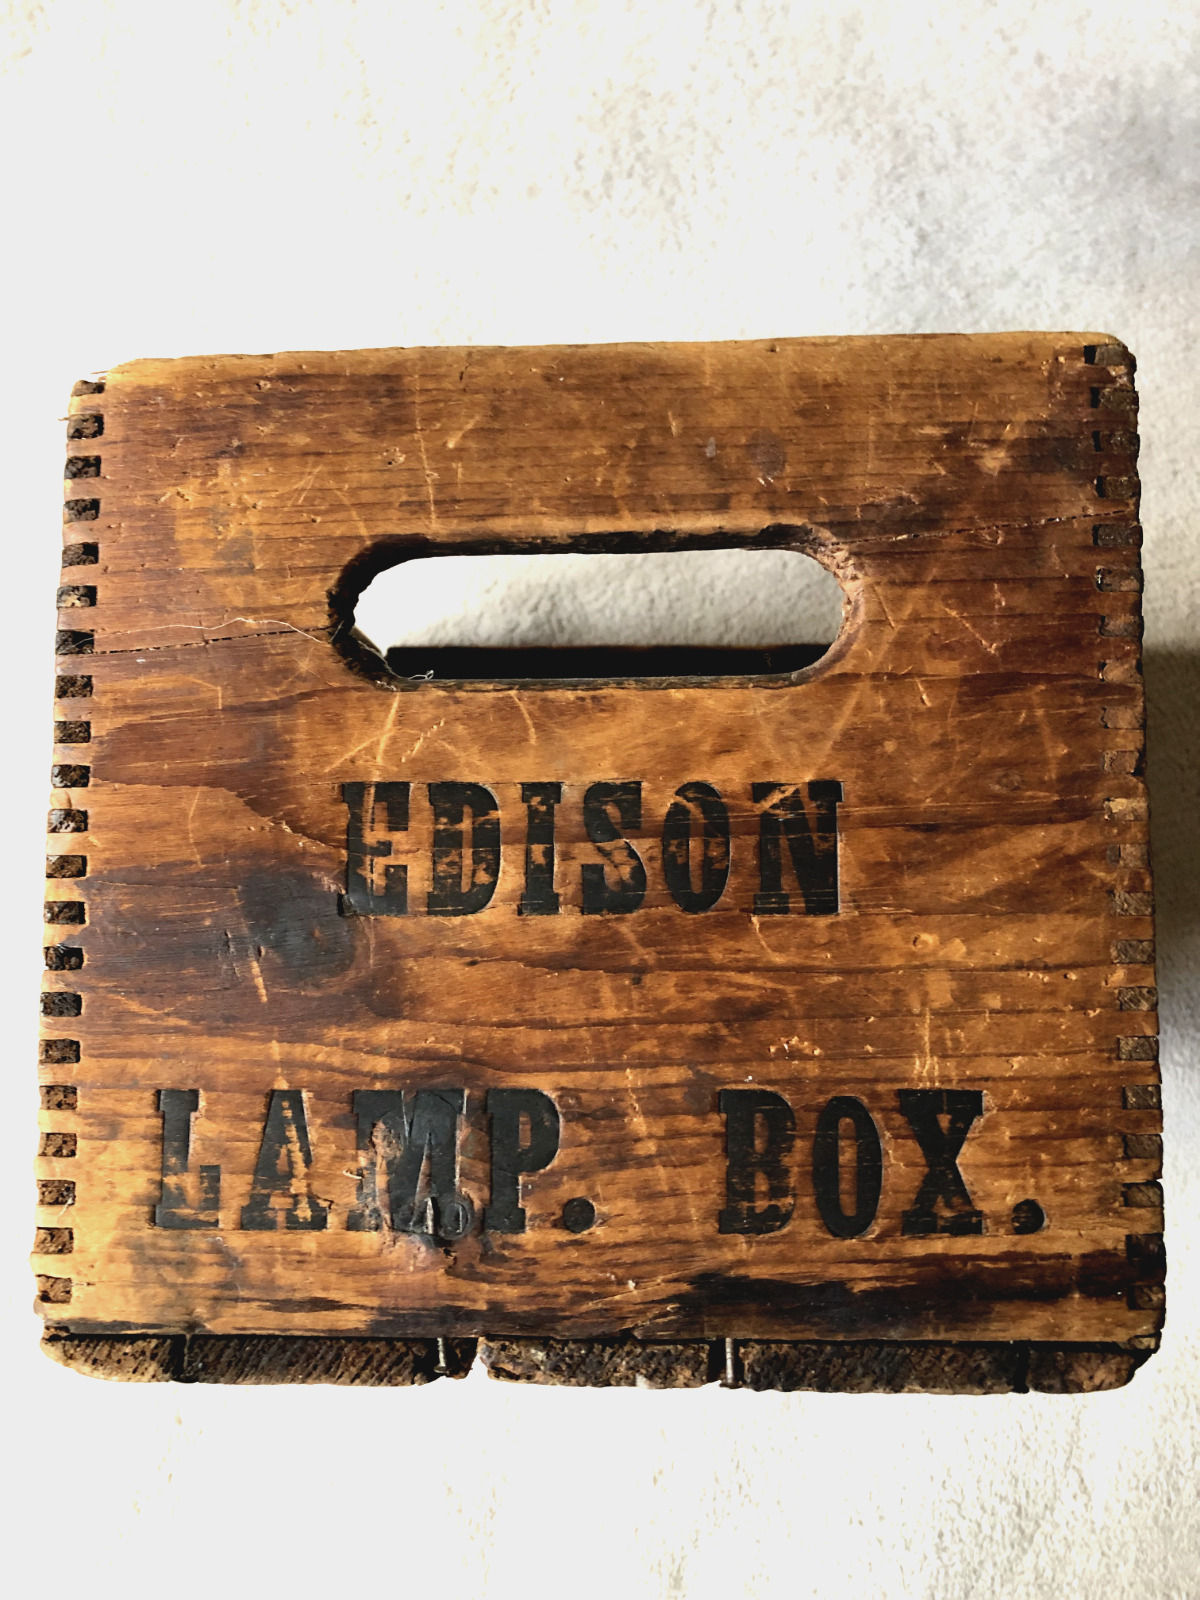 Antique Edison Lamp Box